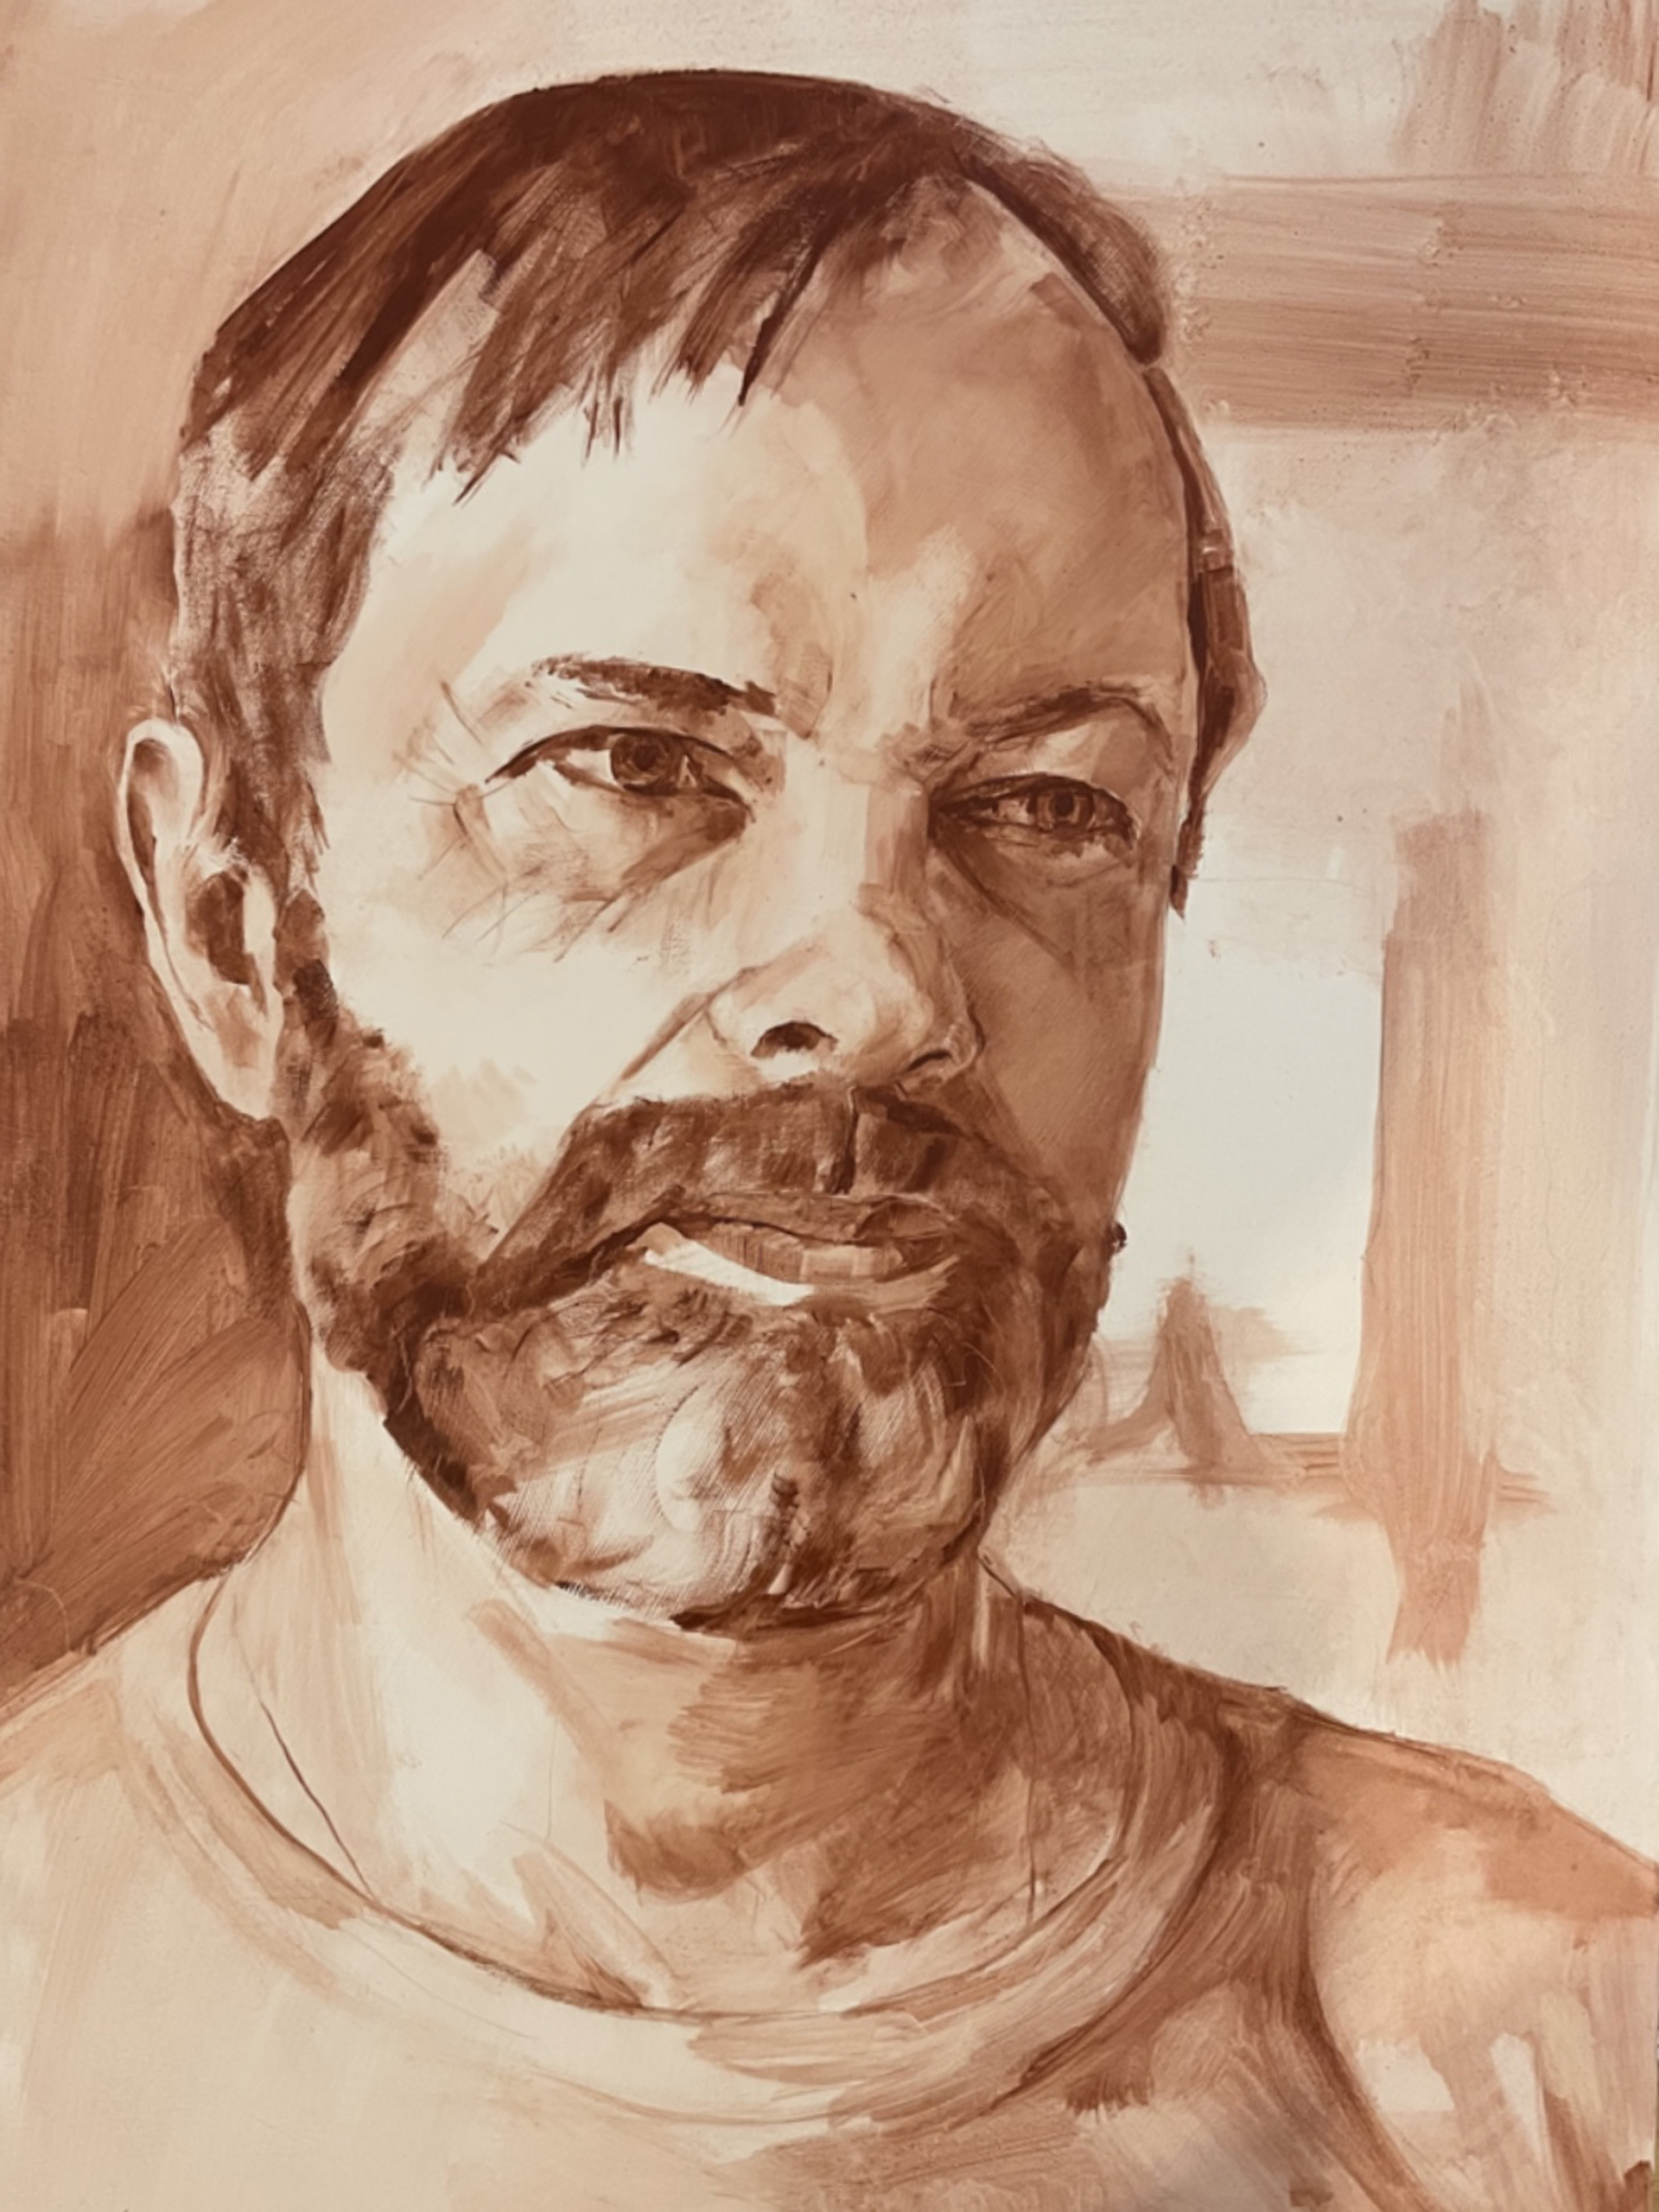 Portret mężczyzny, ojca autorki, wykonany brązową farbą olejną na zasadzie lawowania.